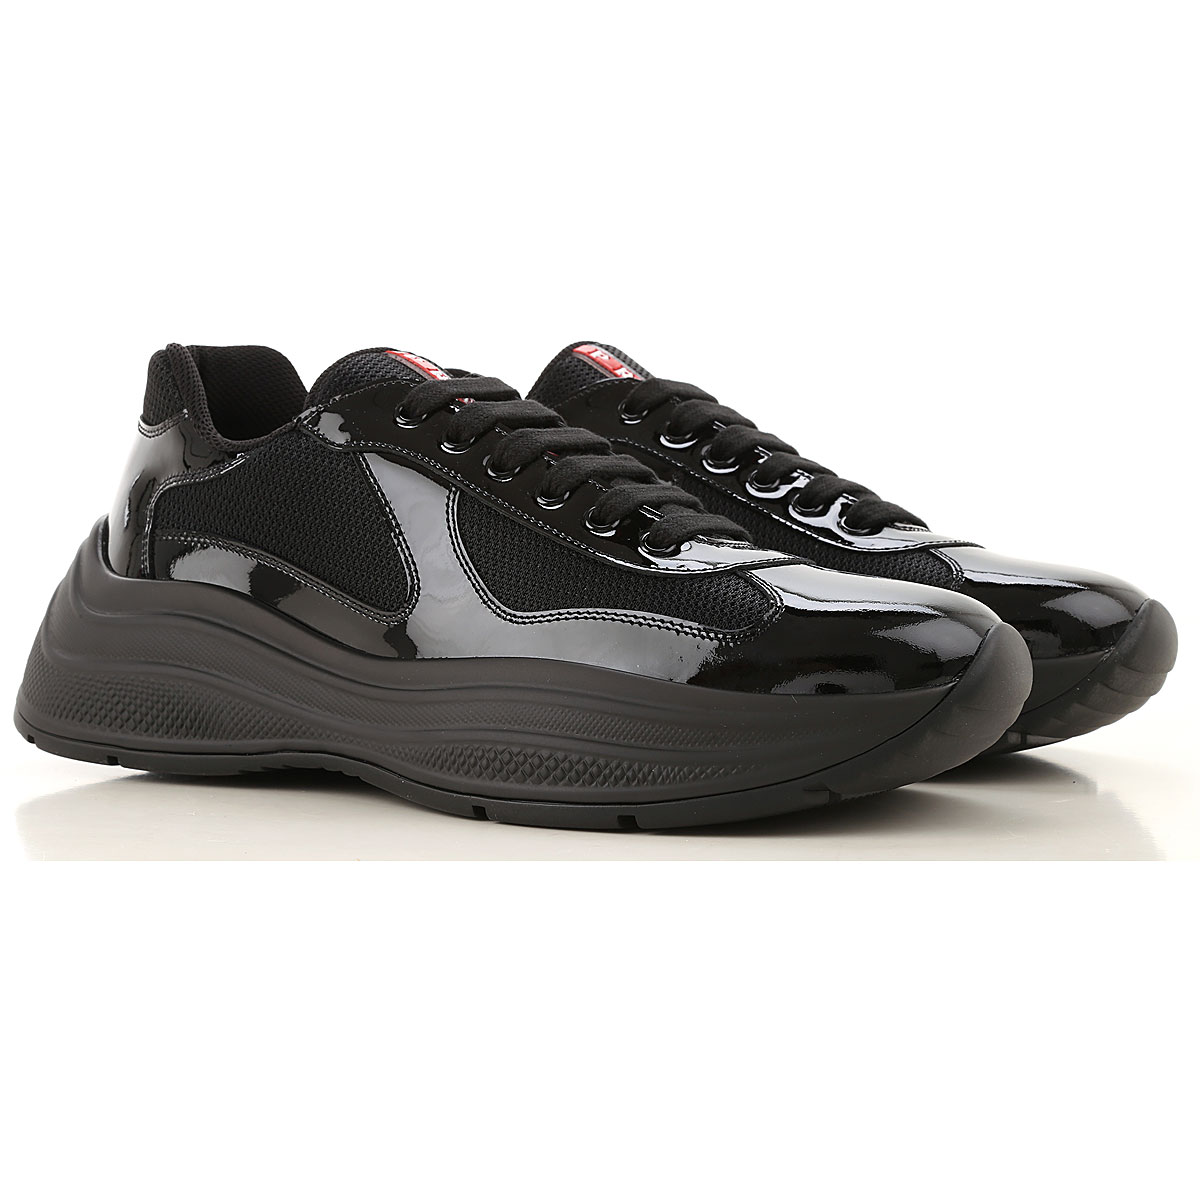 Mens Shoes Prada, Style code: 4e3494-asz-f0002